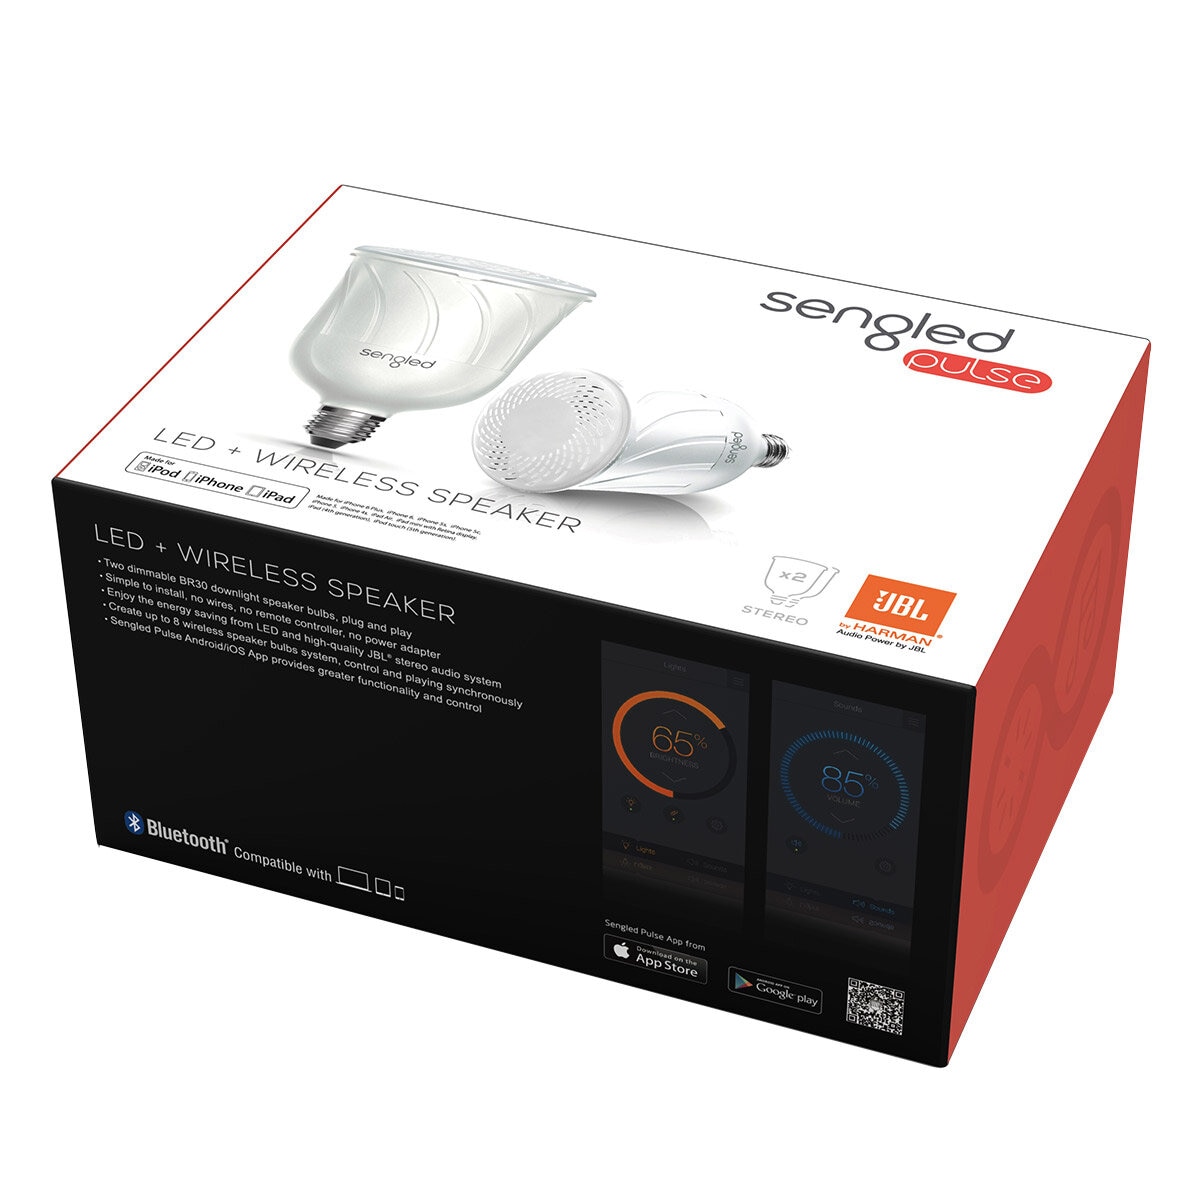 Sengled Pulse LED Bulb with Wireless speaker Starter Kit E27 White